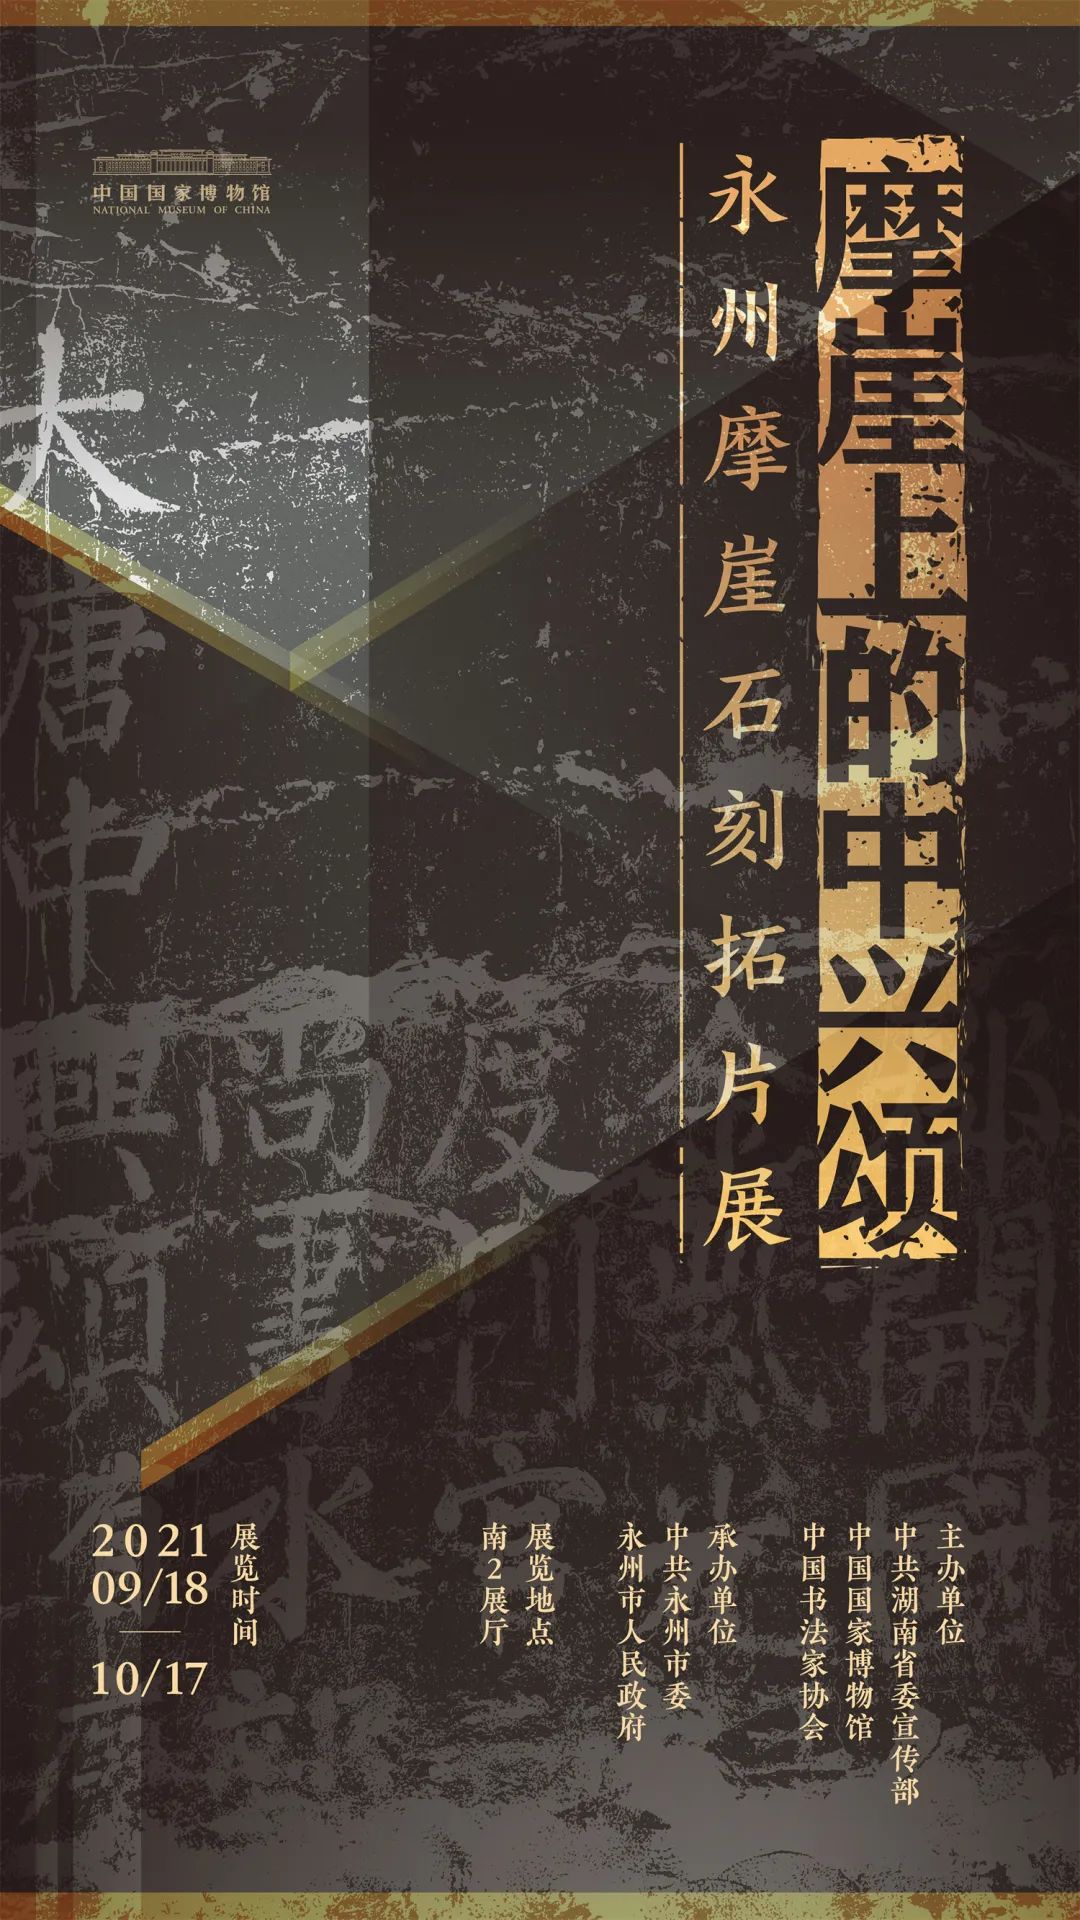 “摩崖上的中兴颂：永州摩崖石刻拓片展”展览海报  海报设计：郝俊山